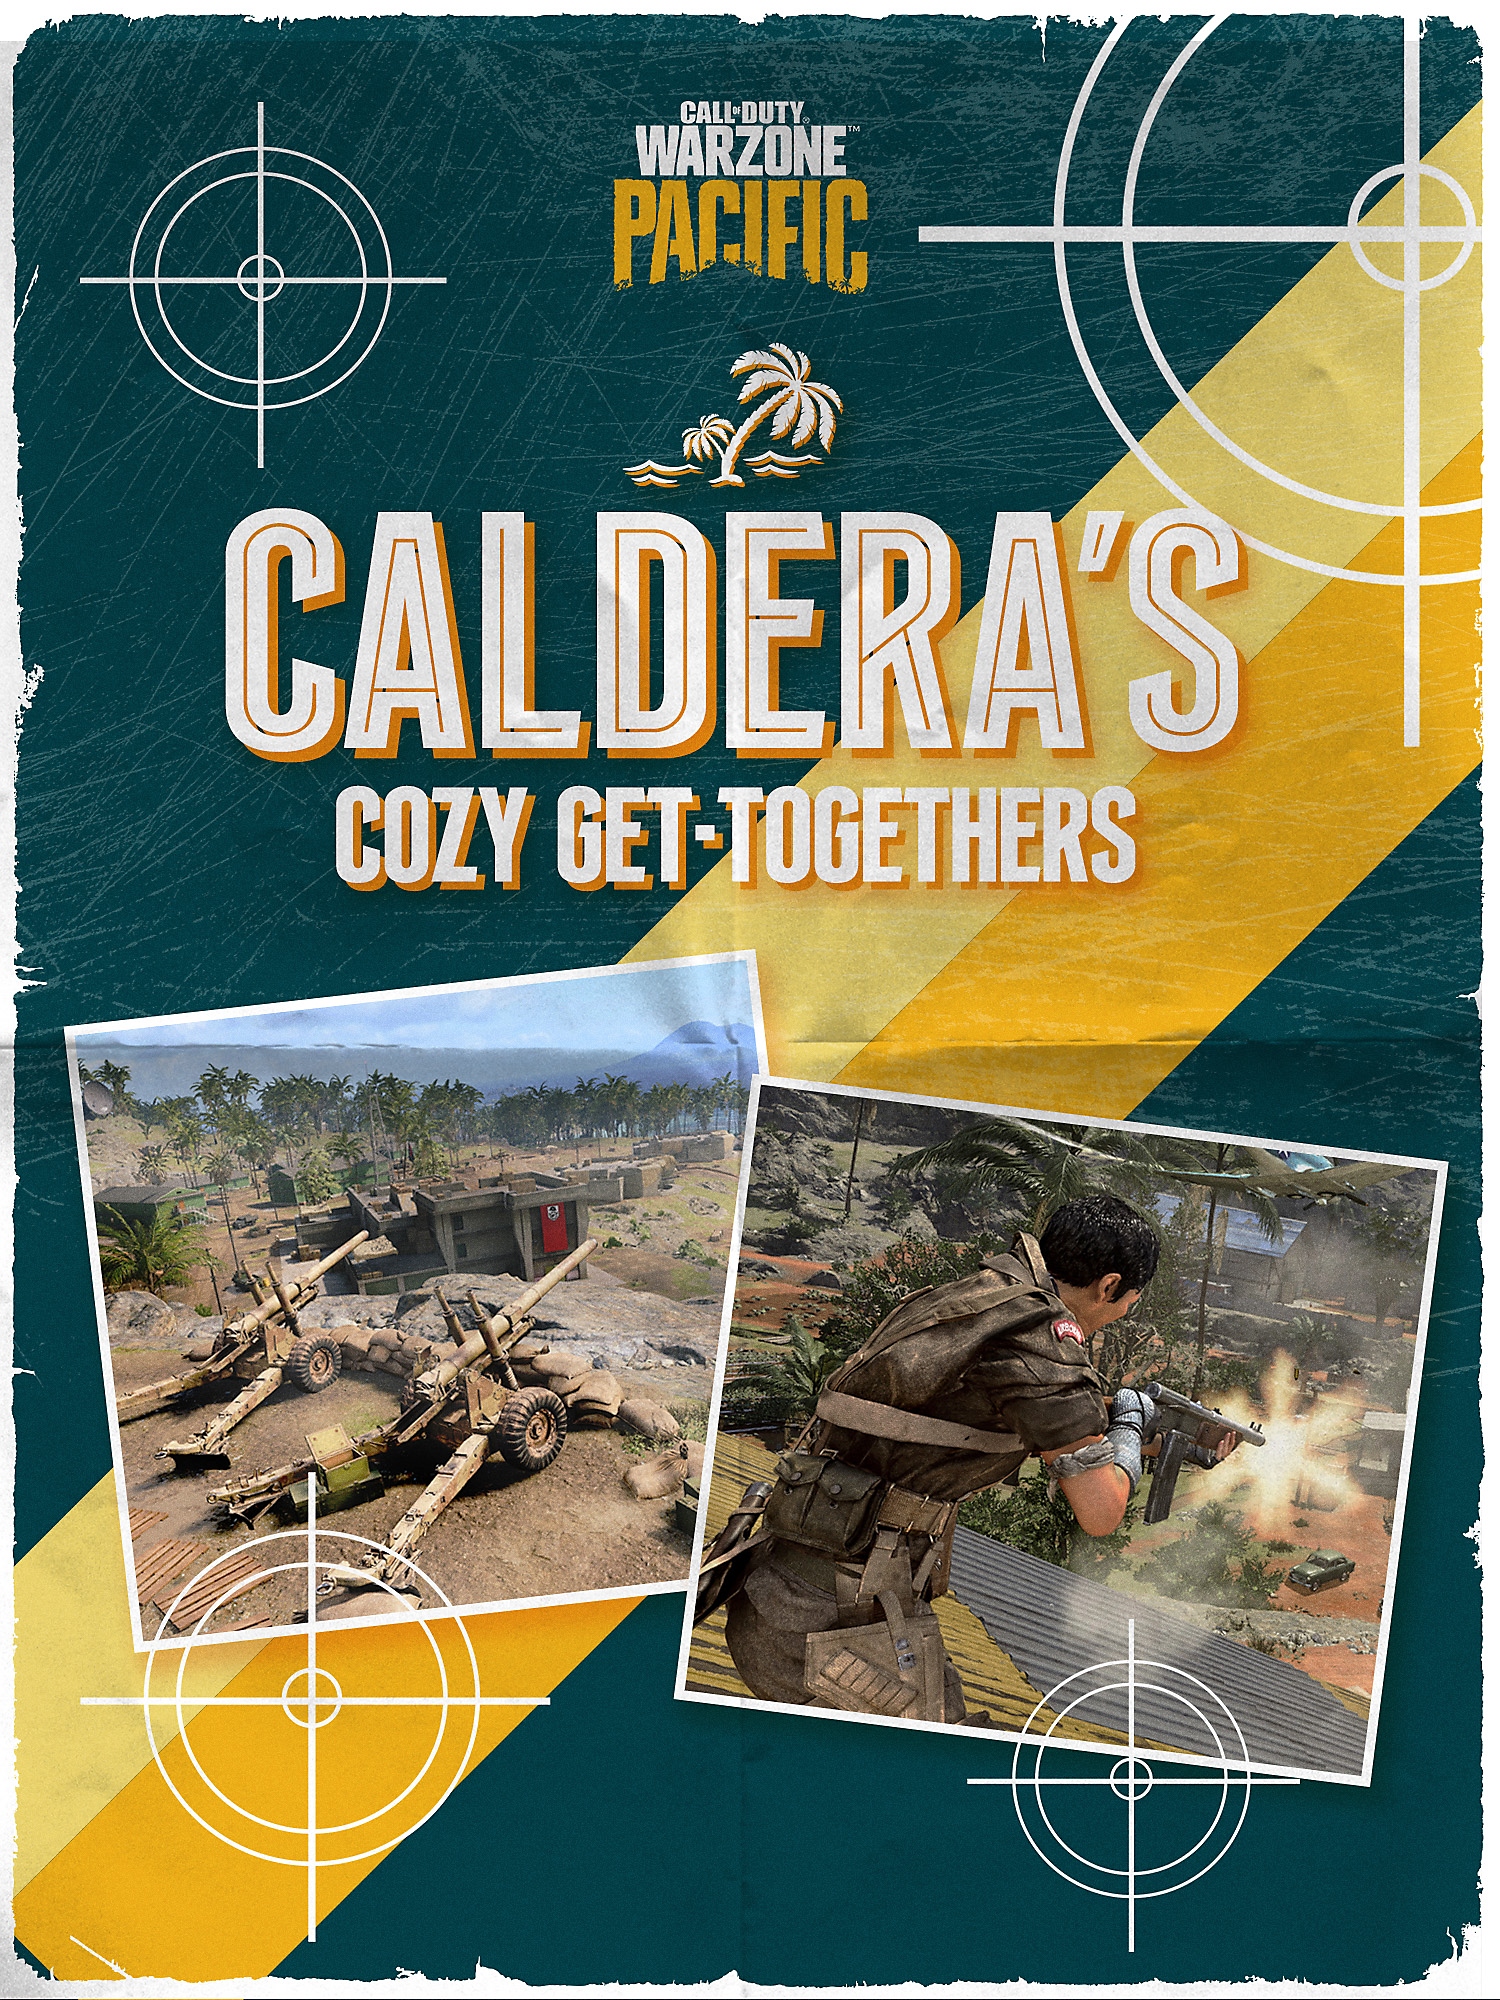 Couverture de la brochure des lieux de rassemblement de Caldera